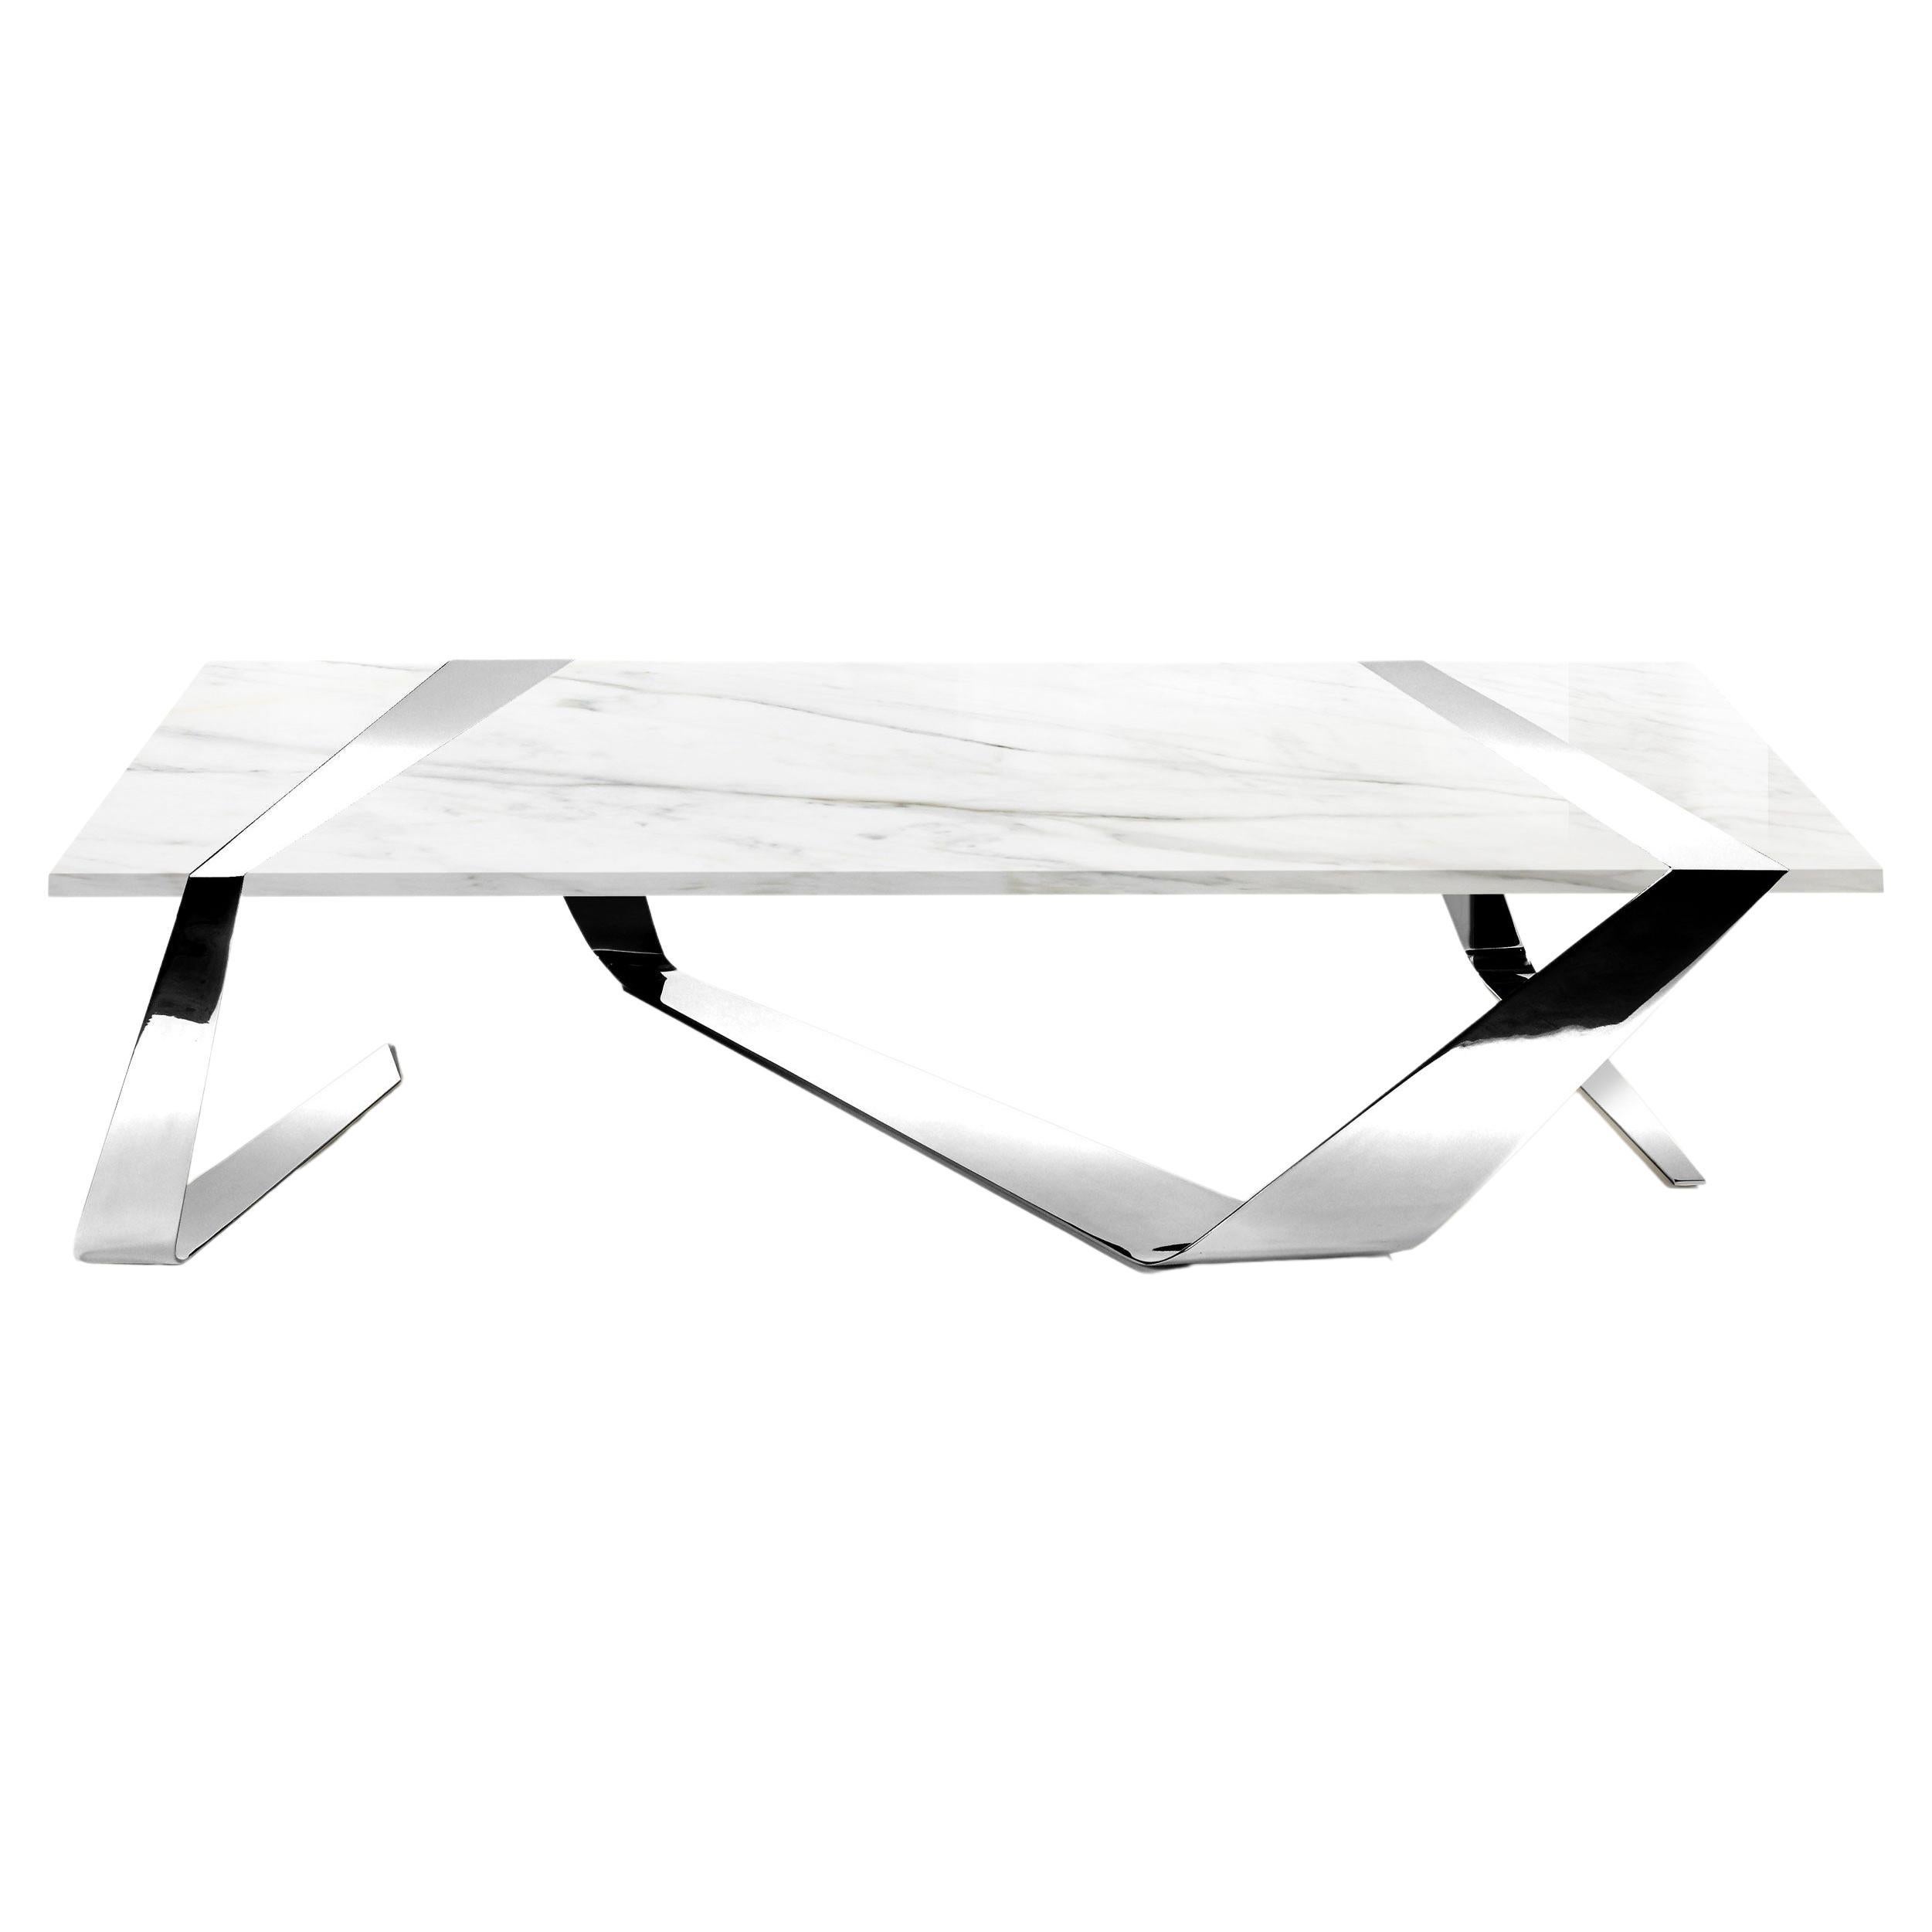 Table basse de forme géométrique en marbre blanc de Carrare et miroir en acier inoxydable